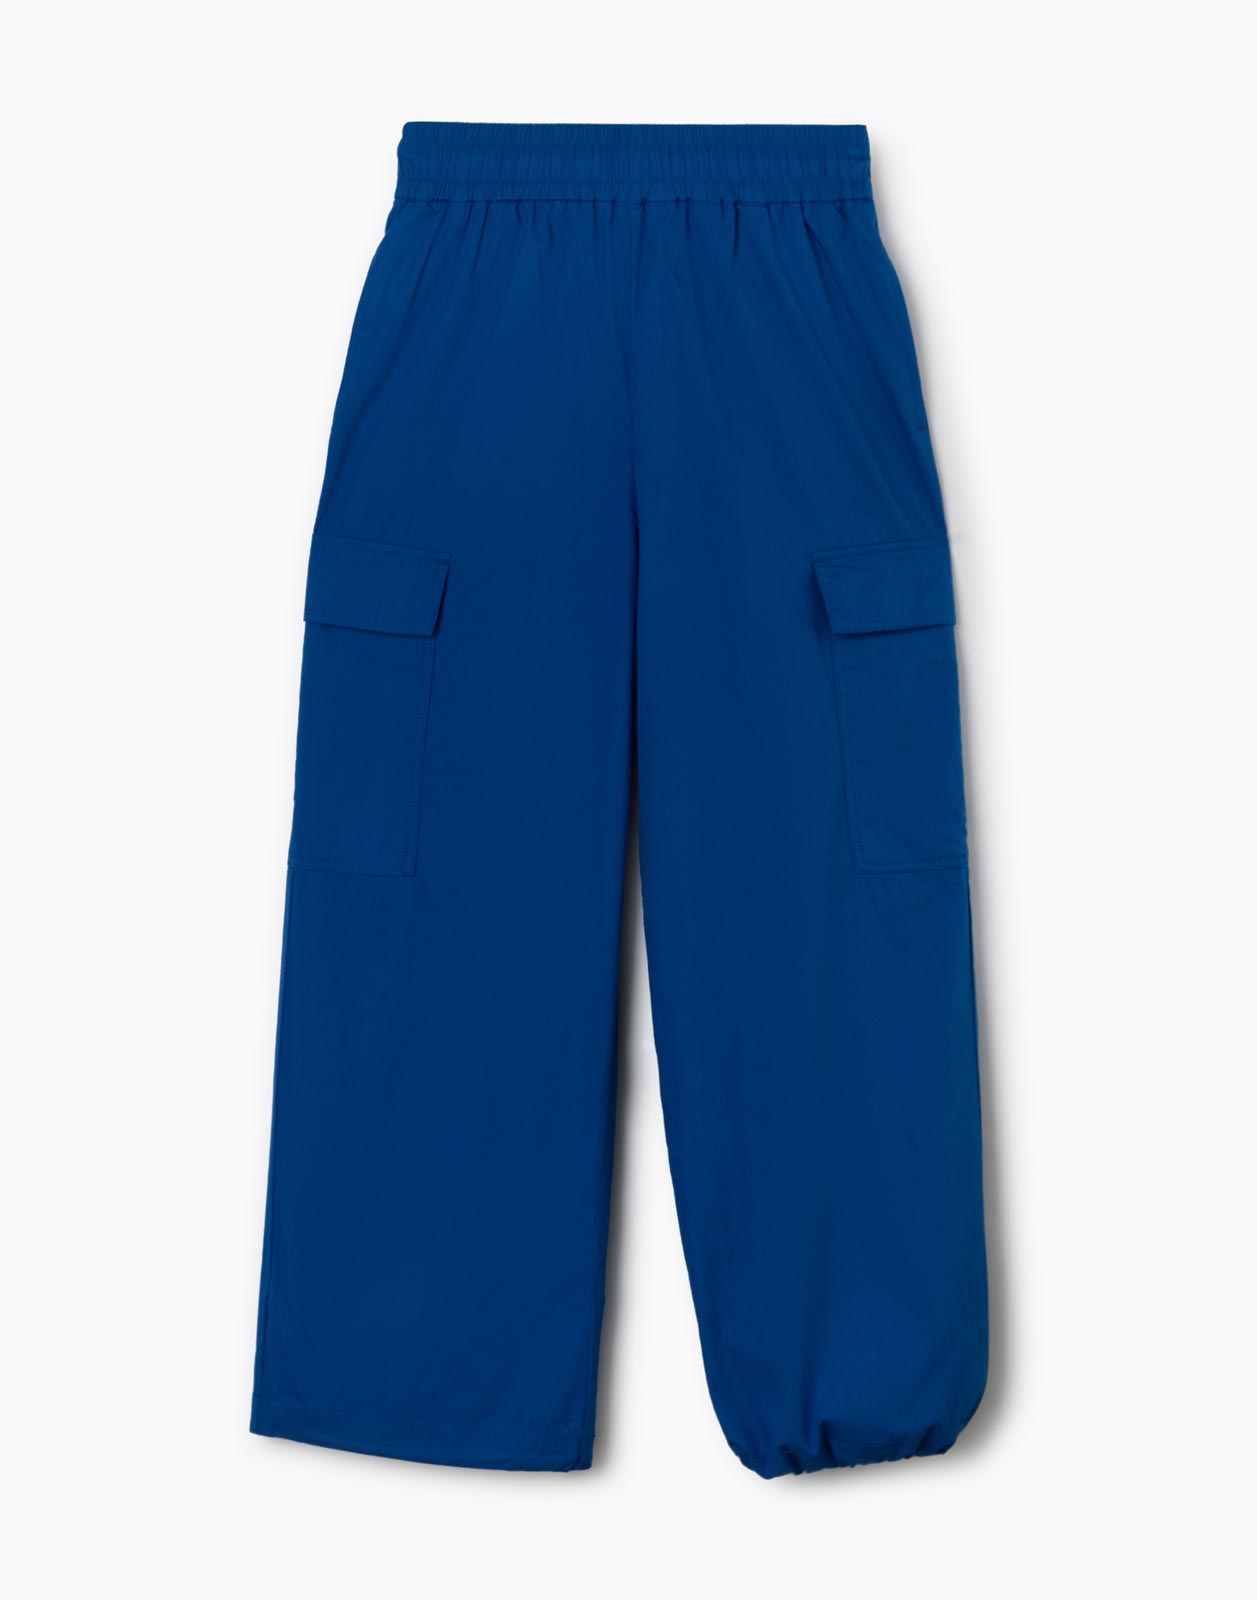 Синие брюки-трансформеры с карманами карго для девочки р.128